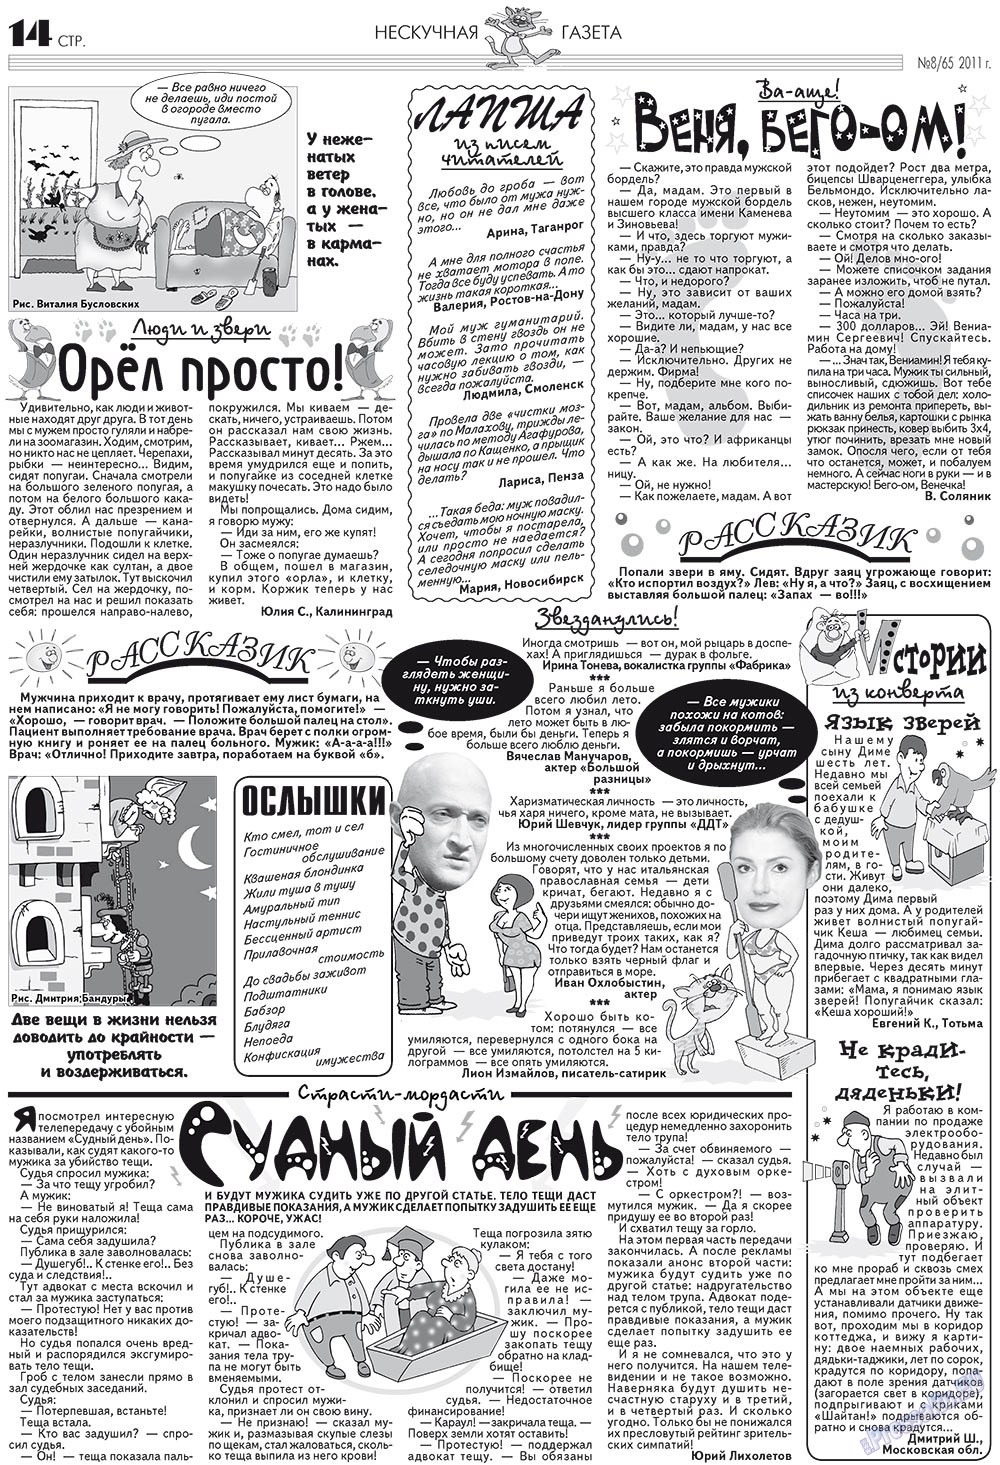 Нескучная газета, журнал. 2011 №8 стр.14